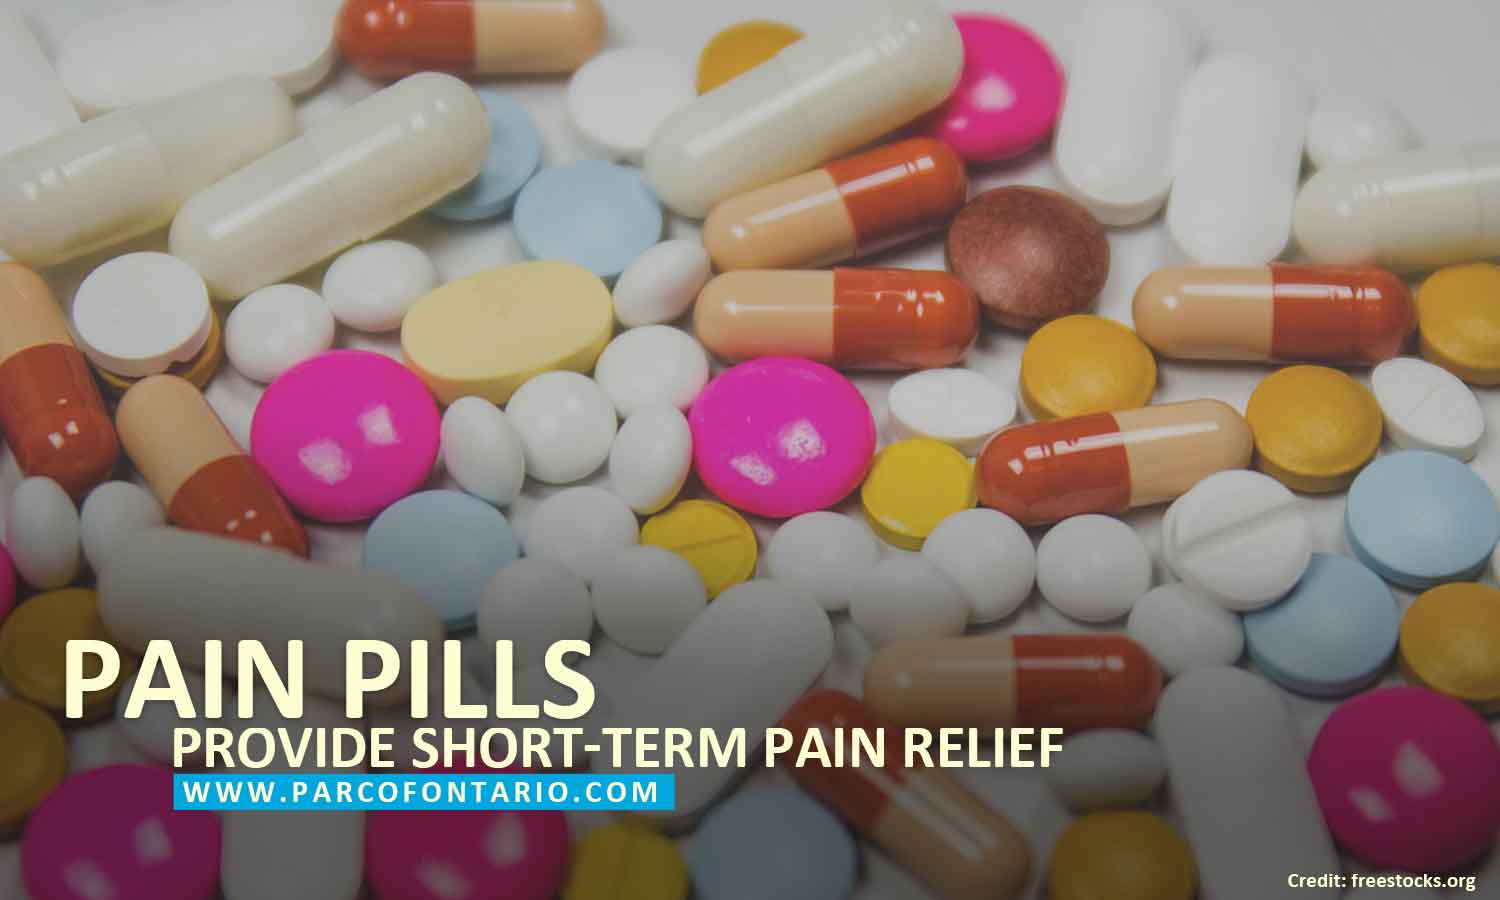 Pain pills provide short-term pain relief